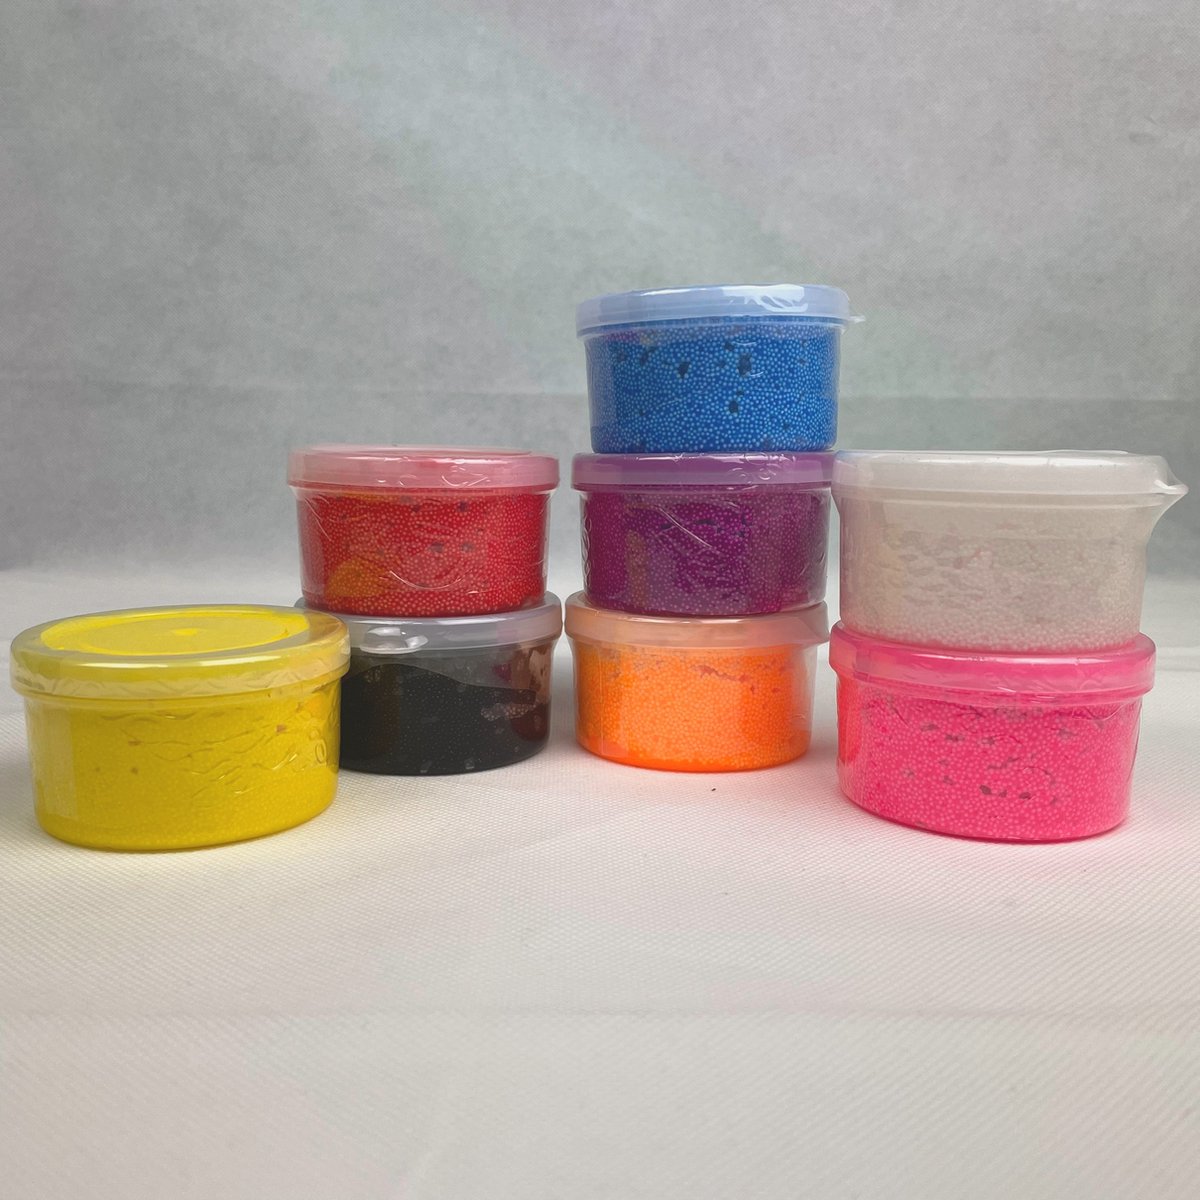 Foam klei - Foam Clay 8 kleuren klei leuke cadeau tip voor kinderen